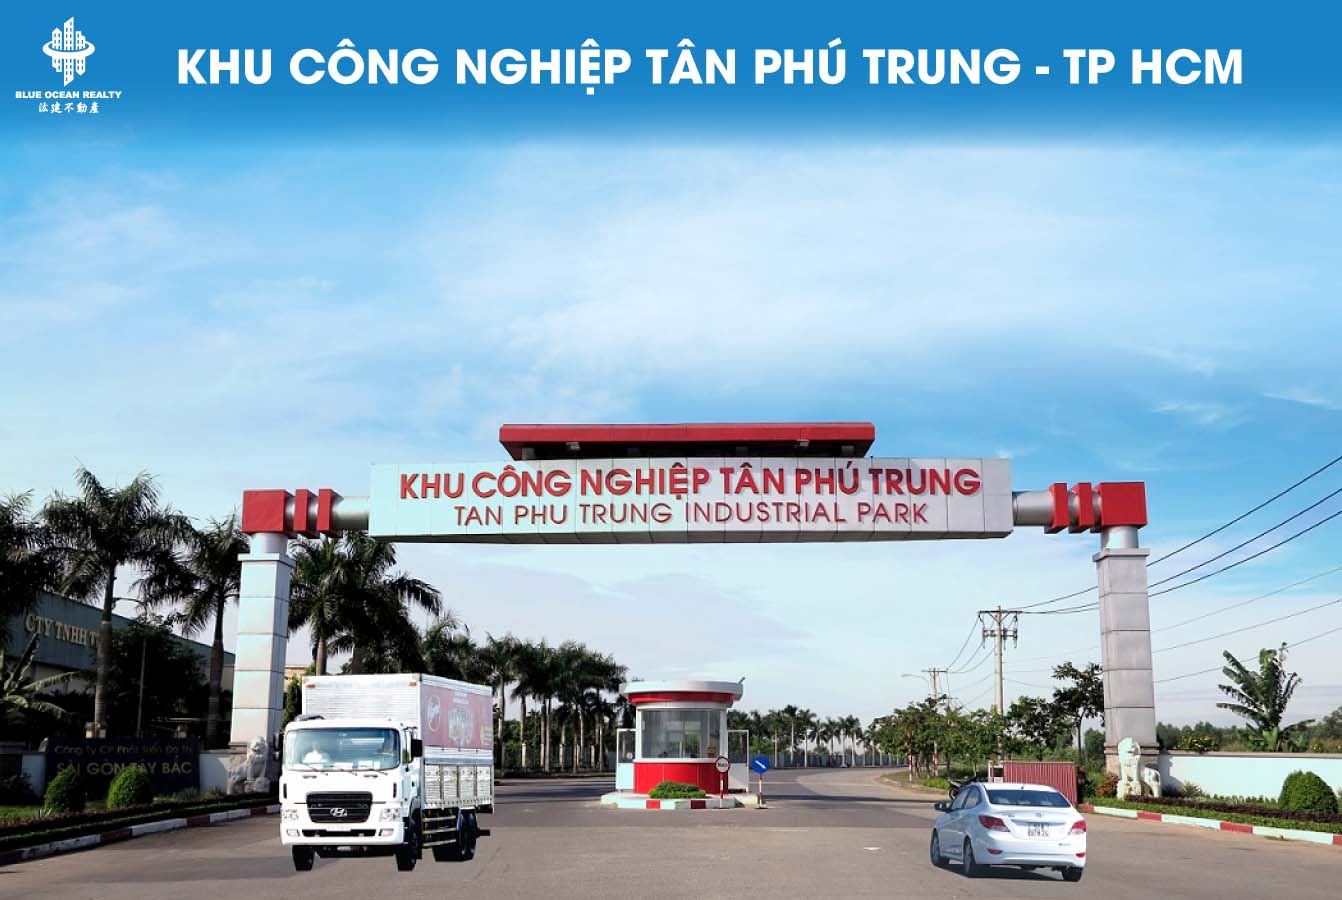 Khu công nghiệp Tân Phú Trung - TP HCM